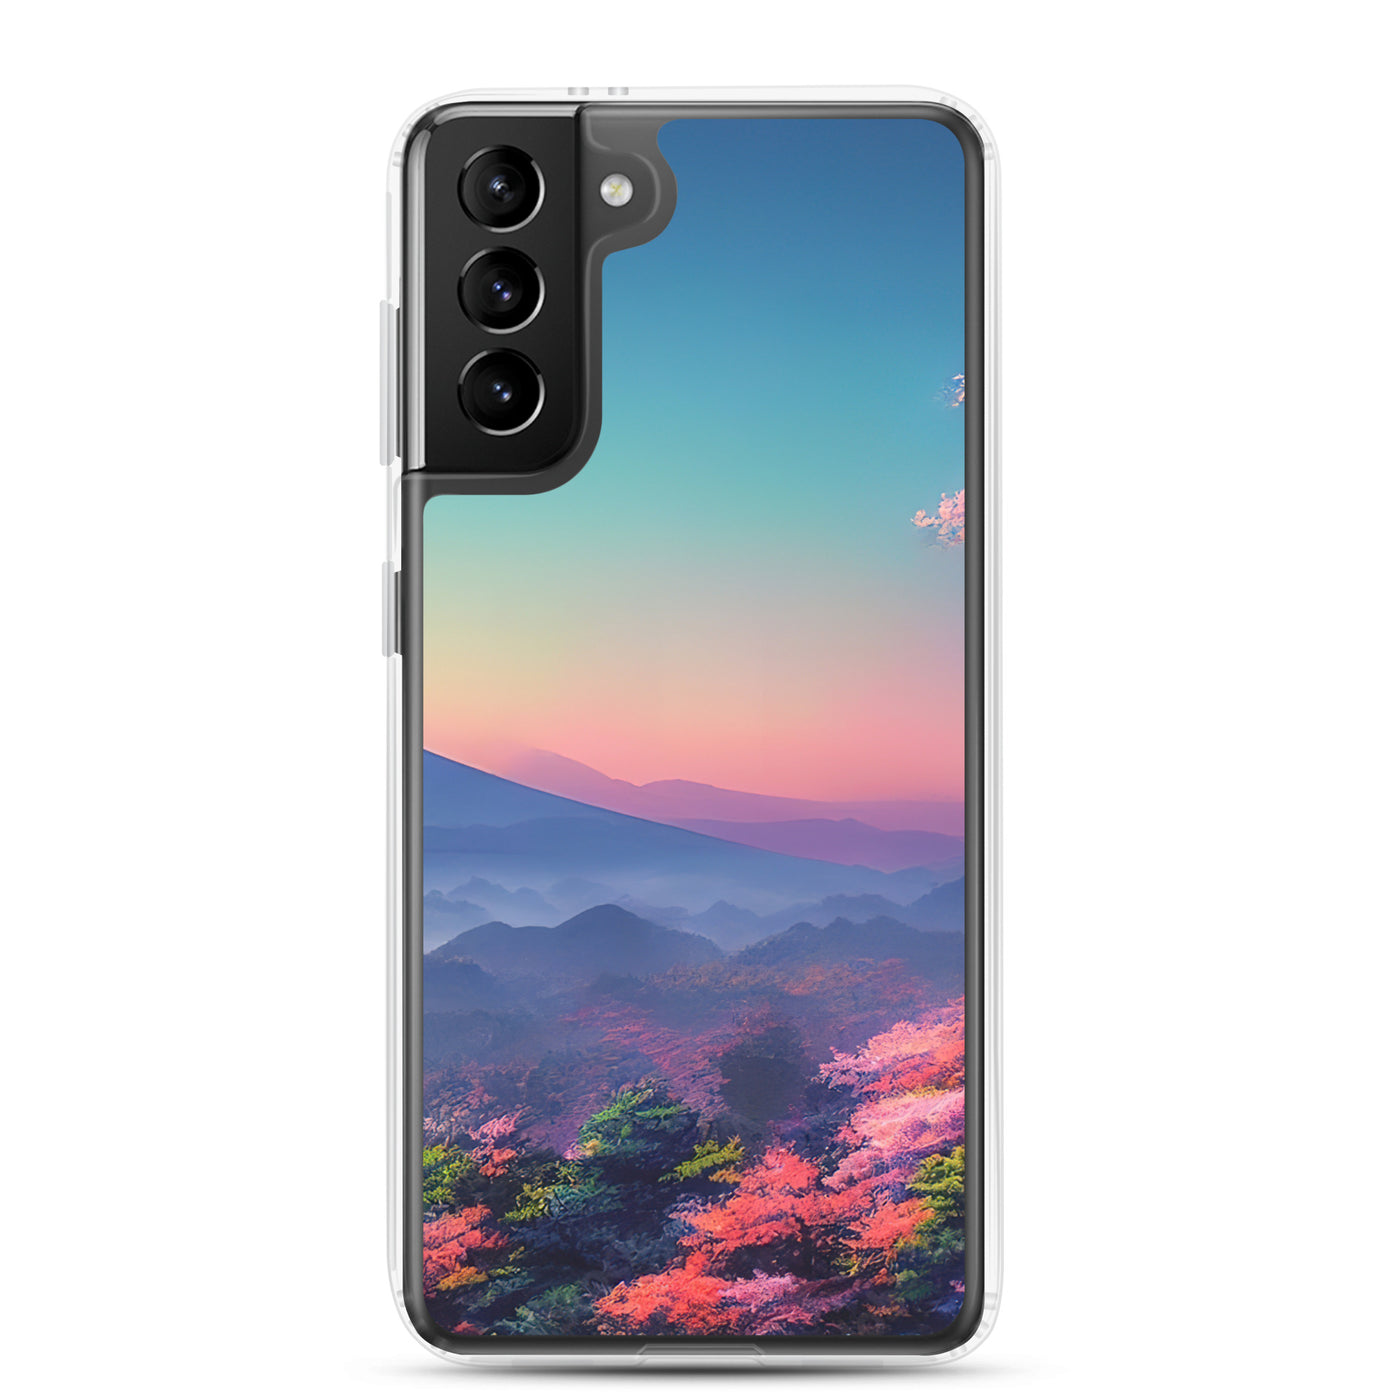 Berg und Wald mit pinken Bäumen - Landschaftsmalerei - Samsung Schutzhülle (durchsichtig) berge xxx Samsung Galaxy S21 Plus